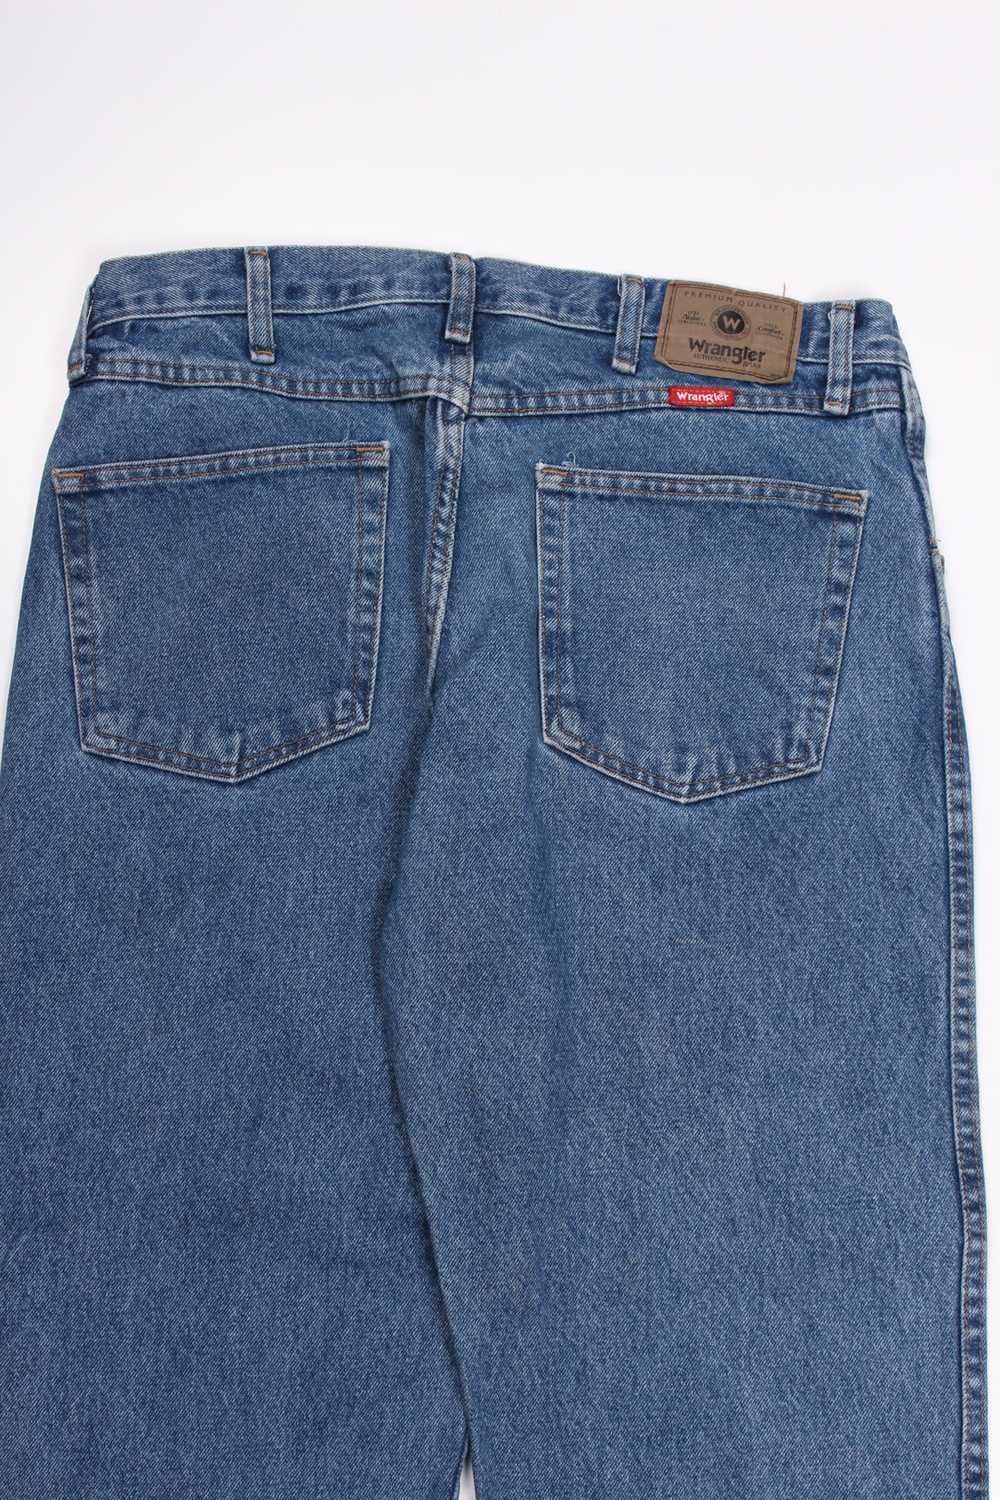 Men's Vintage Wrangler Denim Jeans W34 x L31 - image 3